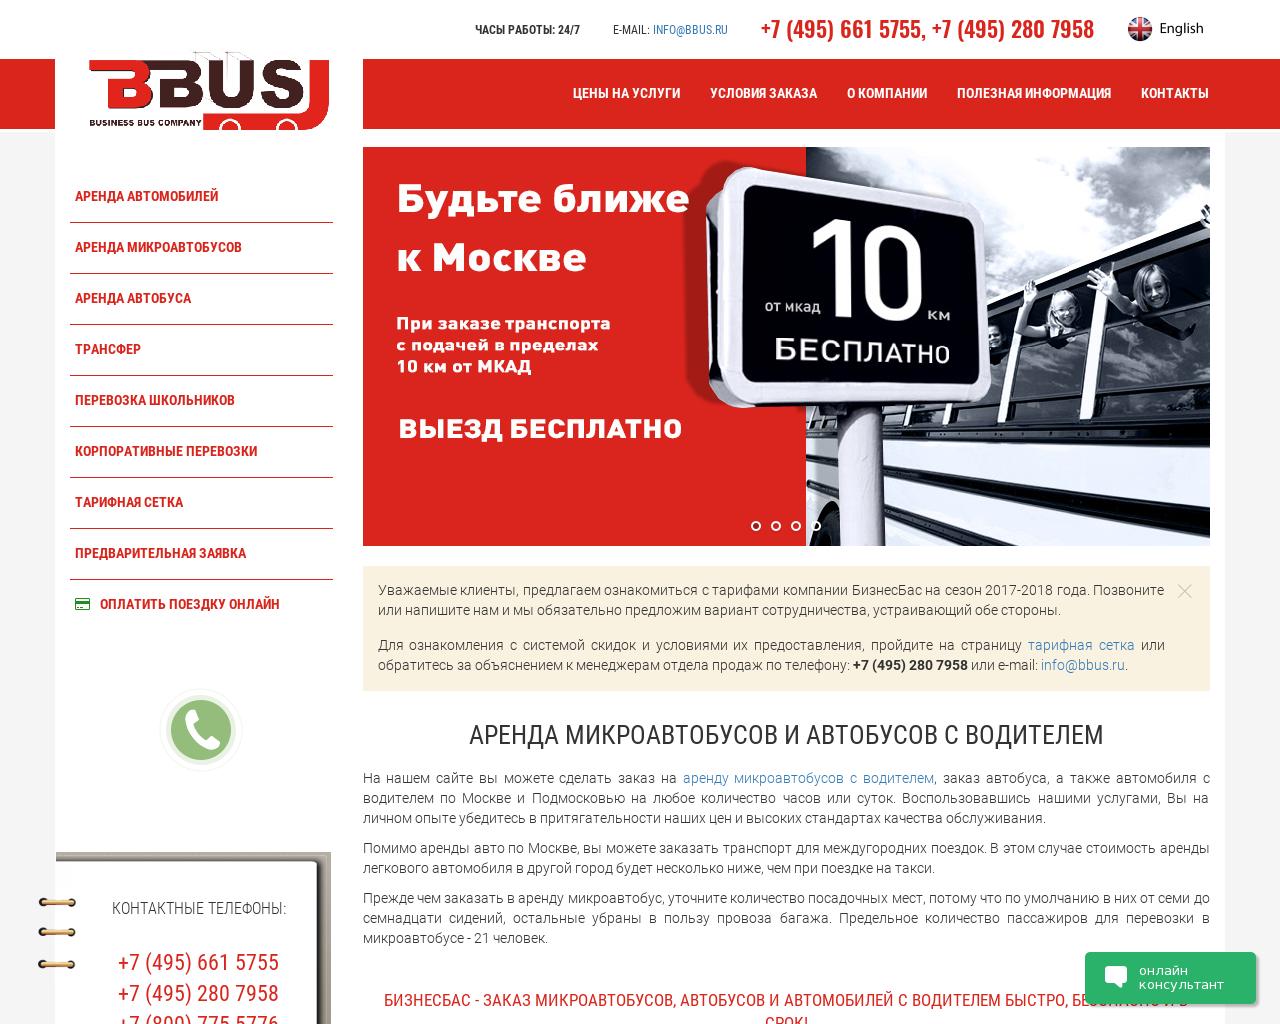 Изображение сайта bbus.ru в разрешении 1280x1024